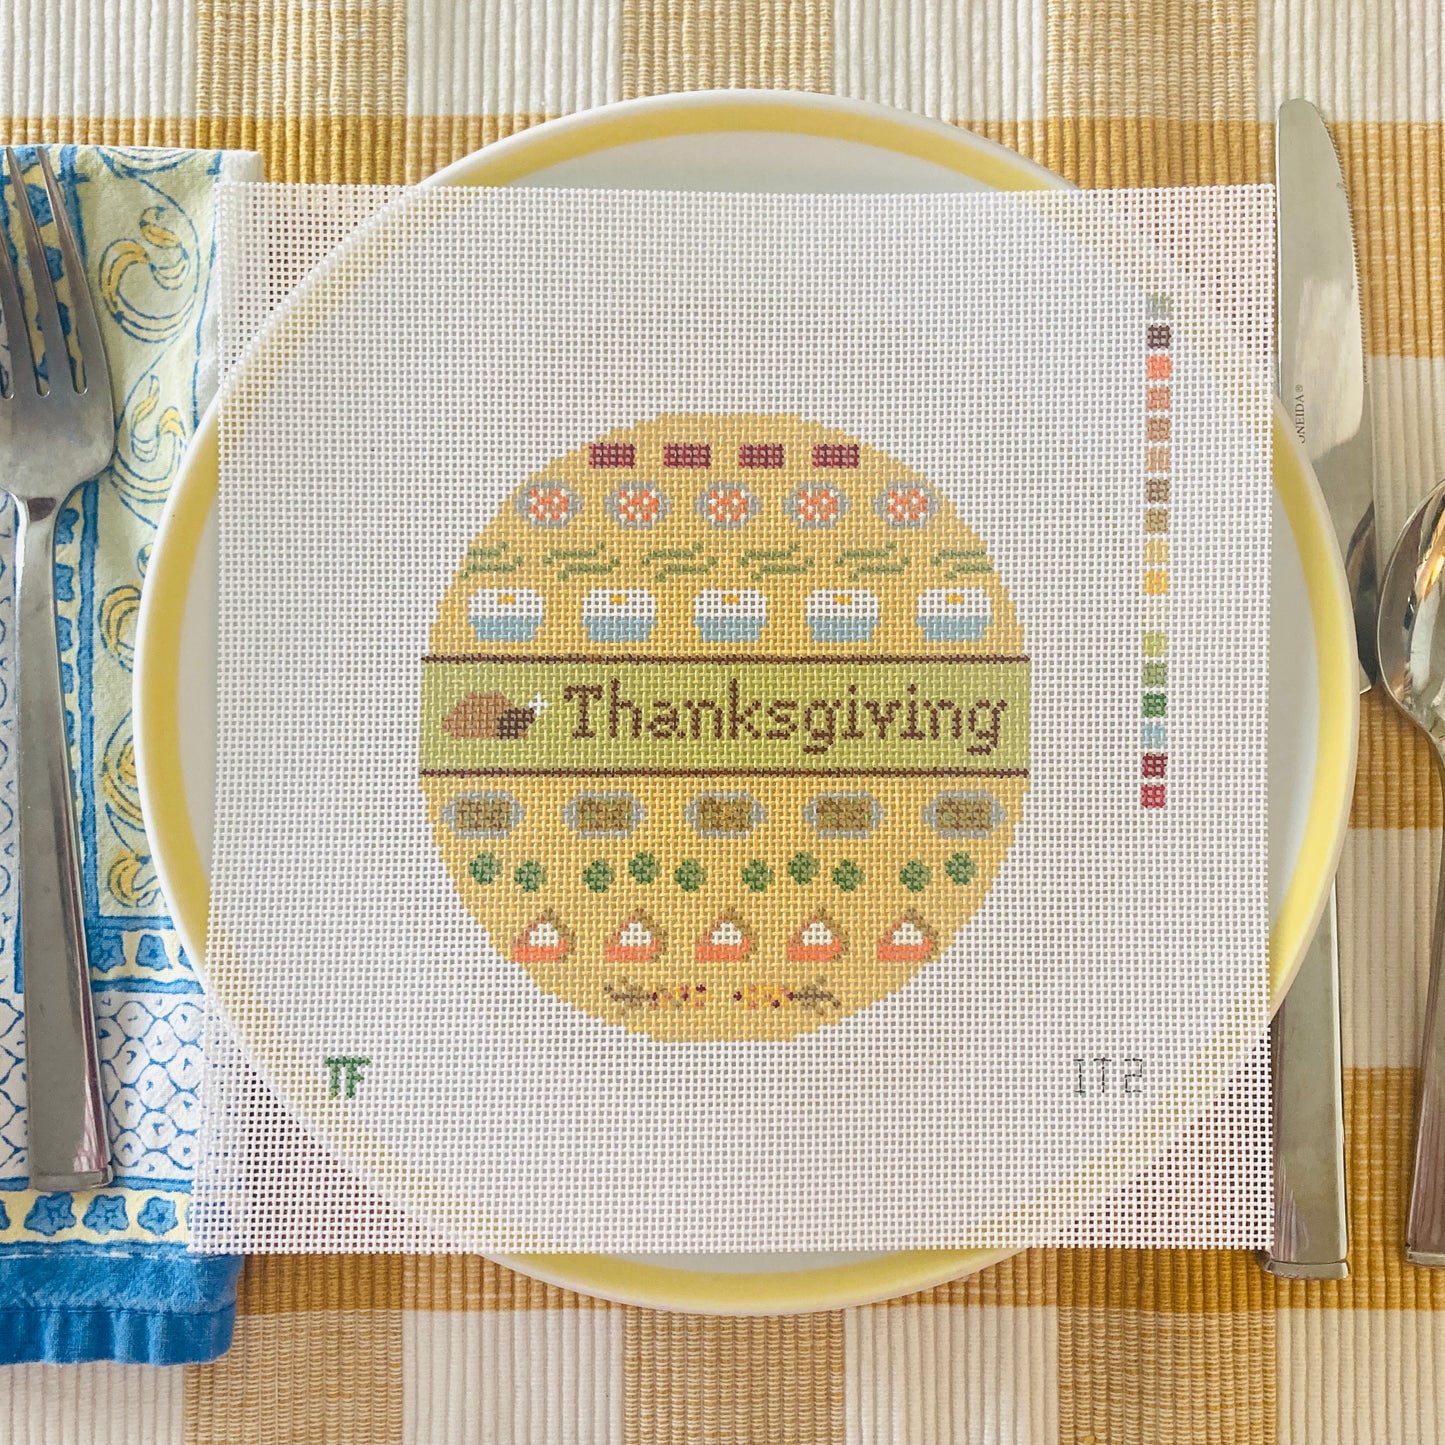 Thanksgiving Dinner Icons Sampler Round